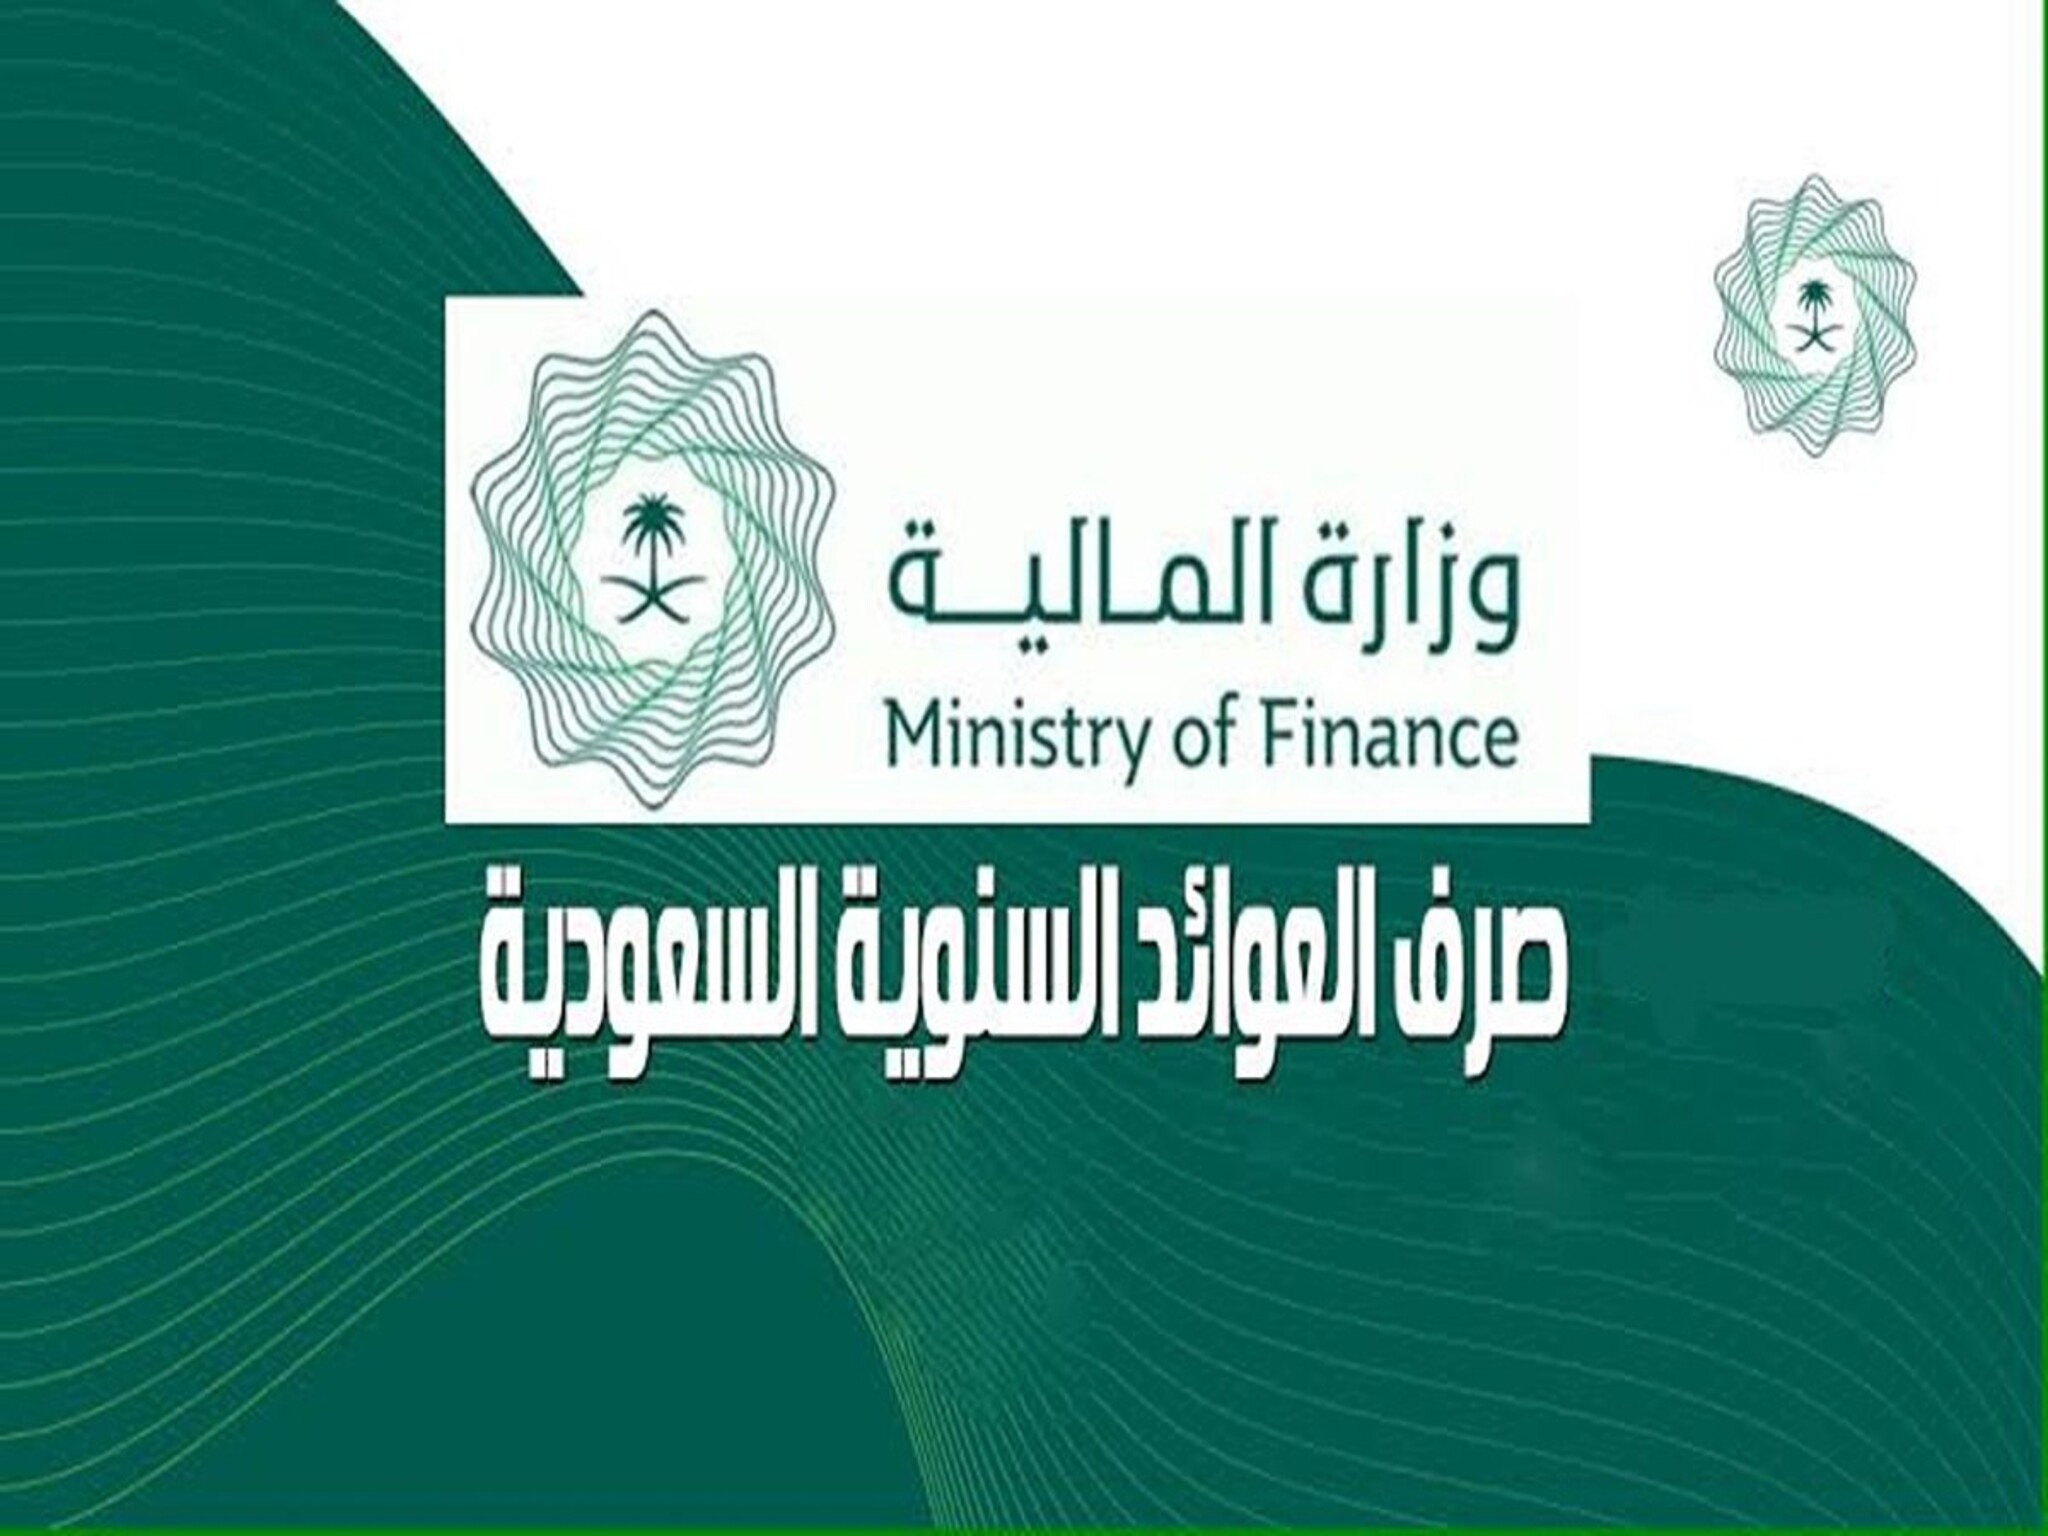 وزارة المالية السعودية تحدد موعد صرف العوائد السنوية عام 1445هـ وخطوات الاستعلام